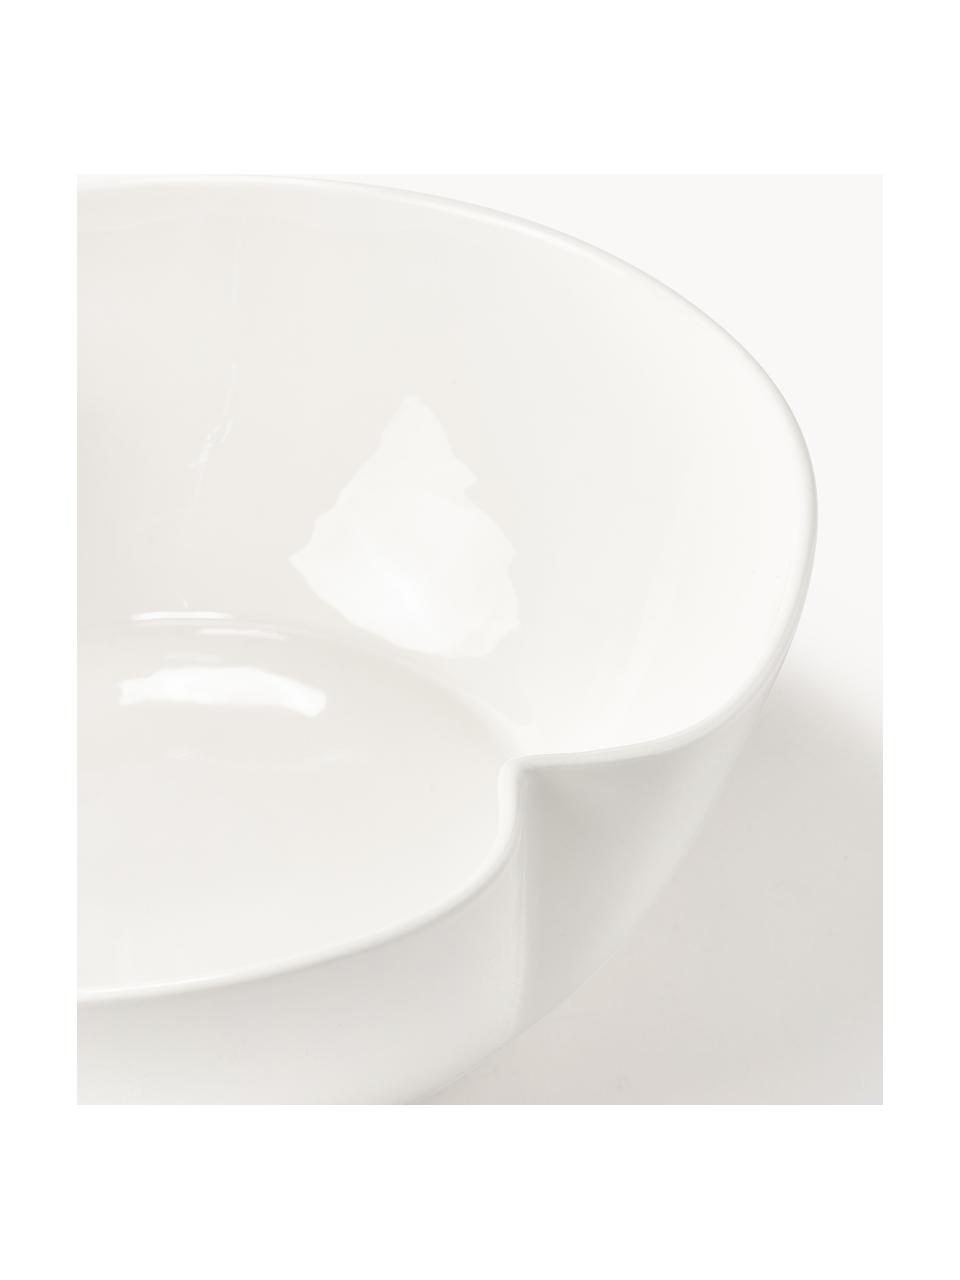 Porcelánová servírovací mísa Nera, Glazovaný porcelán, Lesklá bílá, Ø 27 cm, V 10 cm